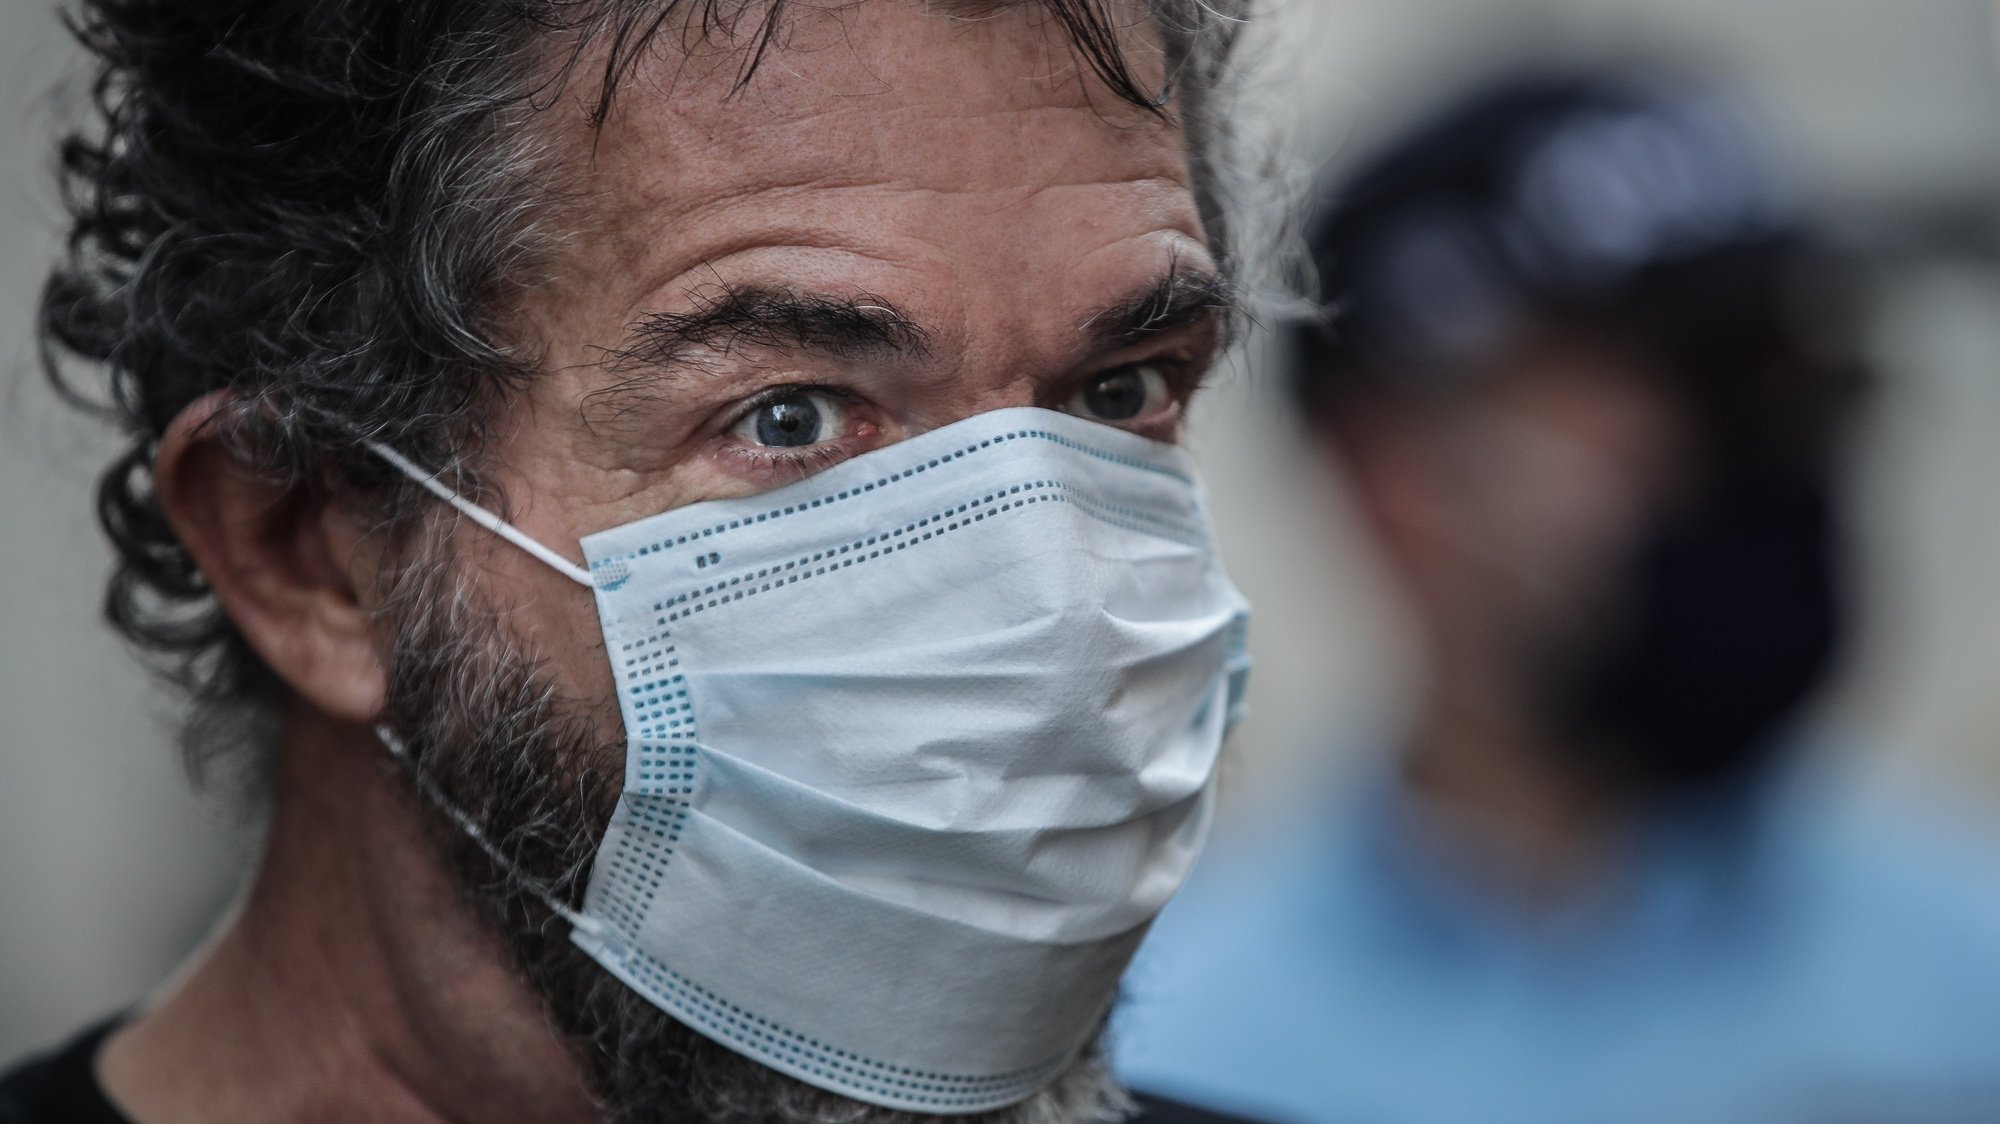 O realizador Sérgio Trefaut participa na concentração de protesto pela situação da pandemia de covid-19 no Brasil, em frente ao Consulado Geral do Brasil, em Lisboa, 29 de maio de 2020. MÁRIO CRUZ/LUSA